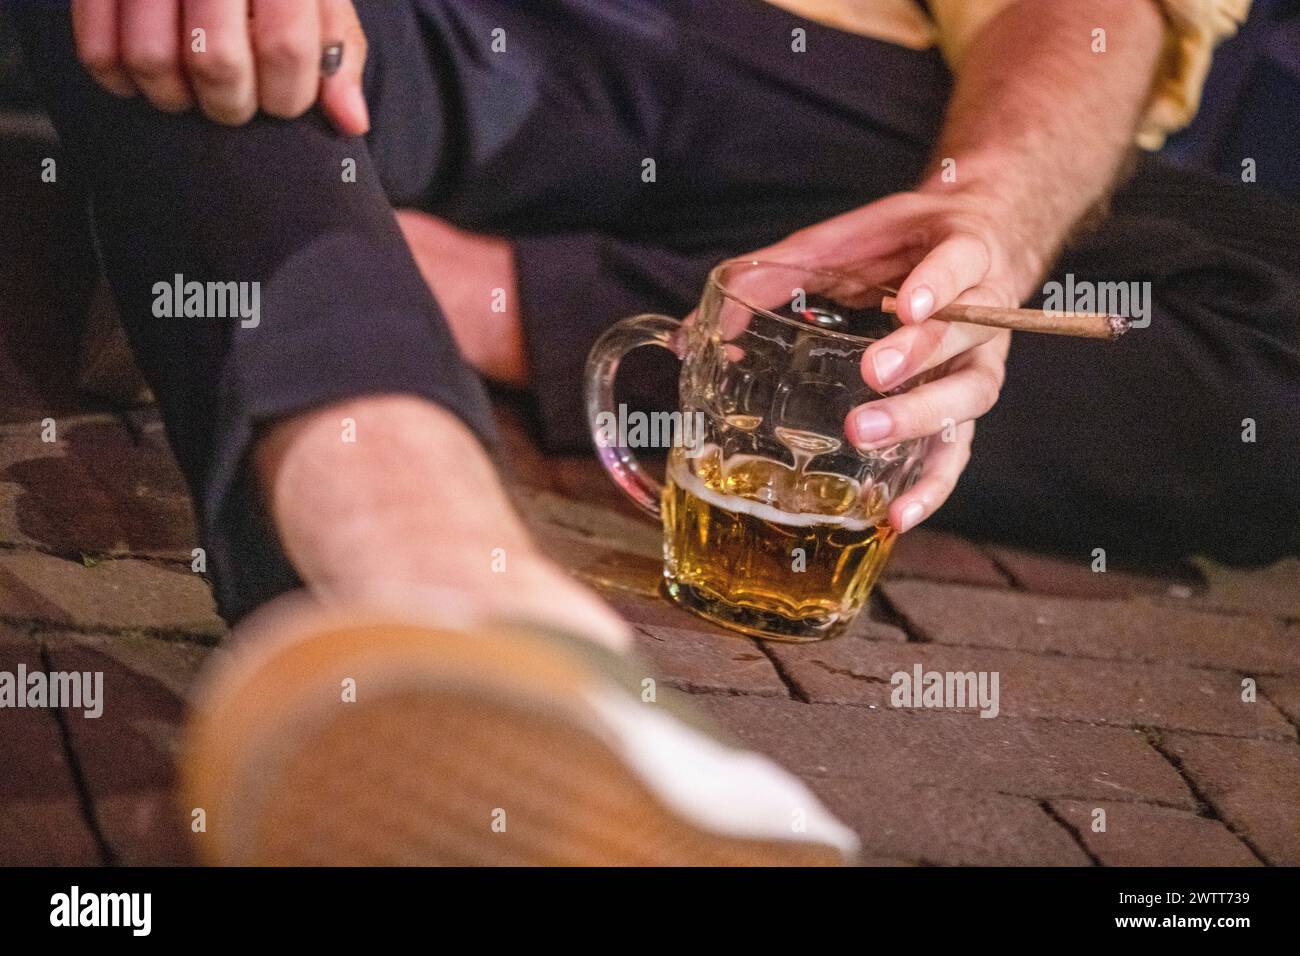 Una vista ravvicinata della mano di una persona che tiene un sigaro con una tazza di birra appoggiata su un pavimento in mattoni. Foto Stock